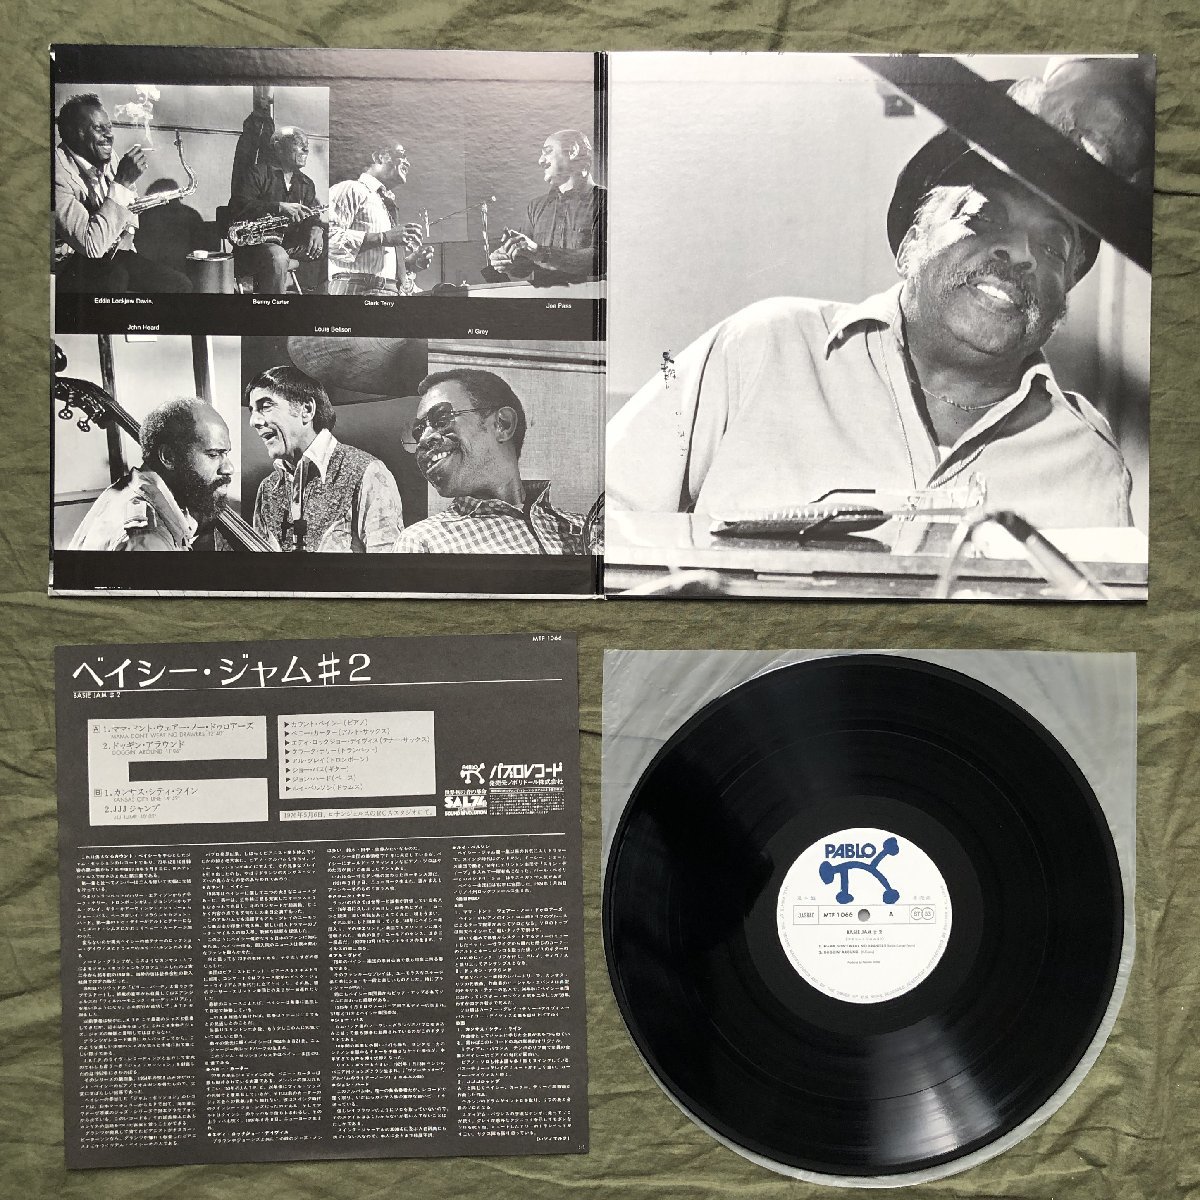 原信夫Collection 傷なし美盤 美ジャケ 美品 プロモ盤 両マト1 1977年 国内初盤 Count Basie LPレコード Basie Jam #2: Joe Pass_画像5